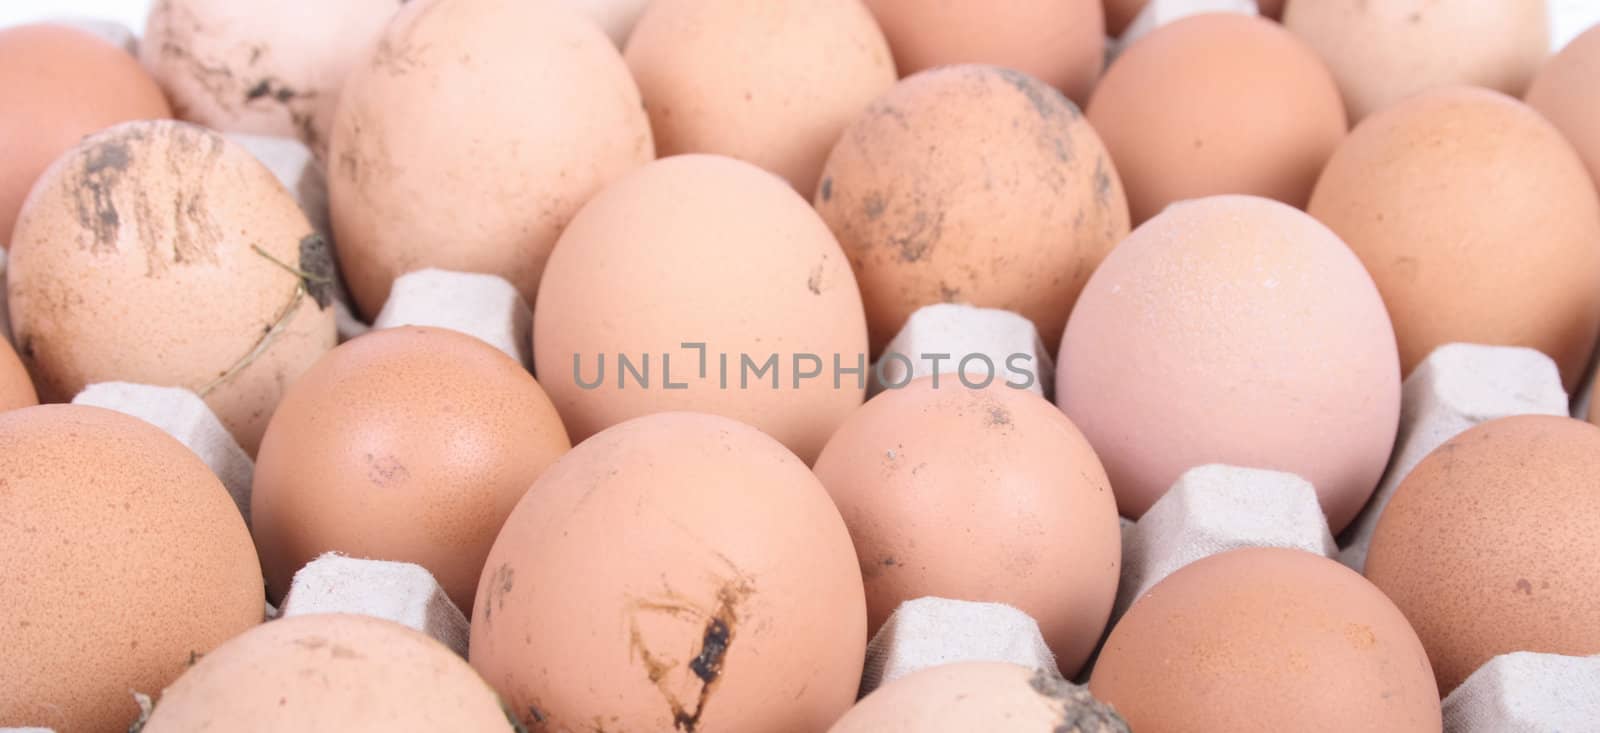 eggs background by jonnysek